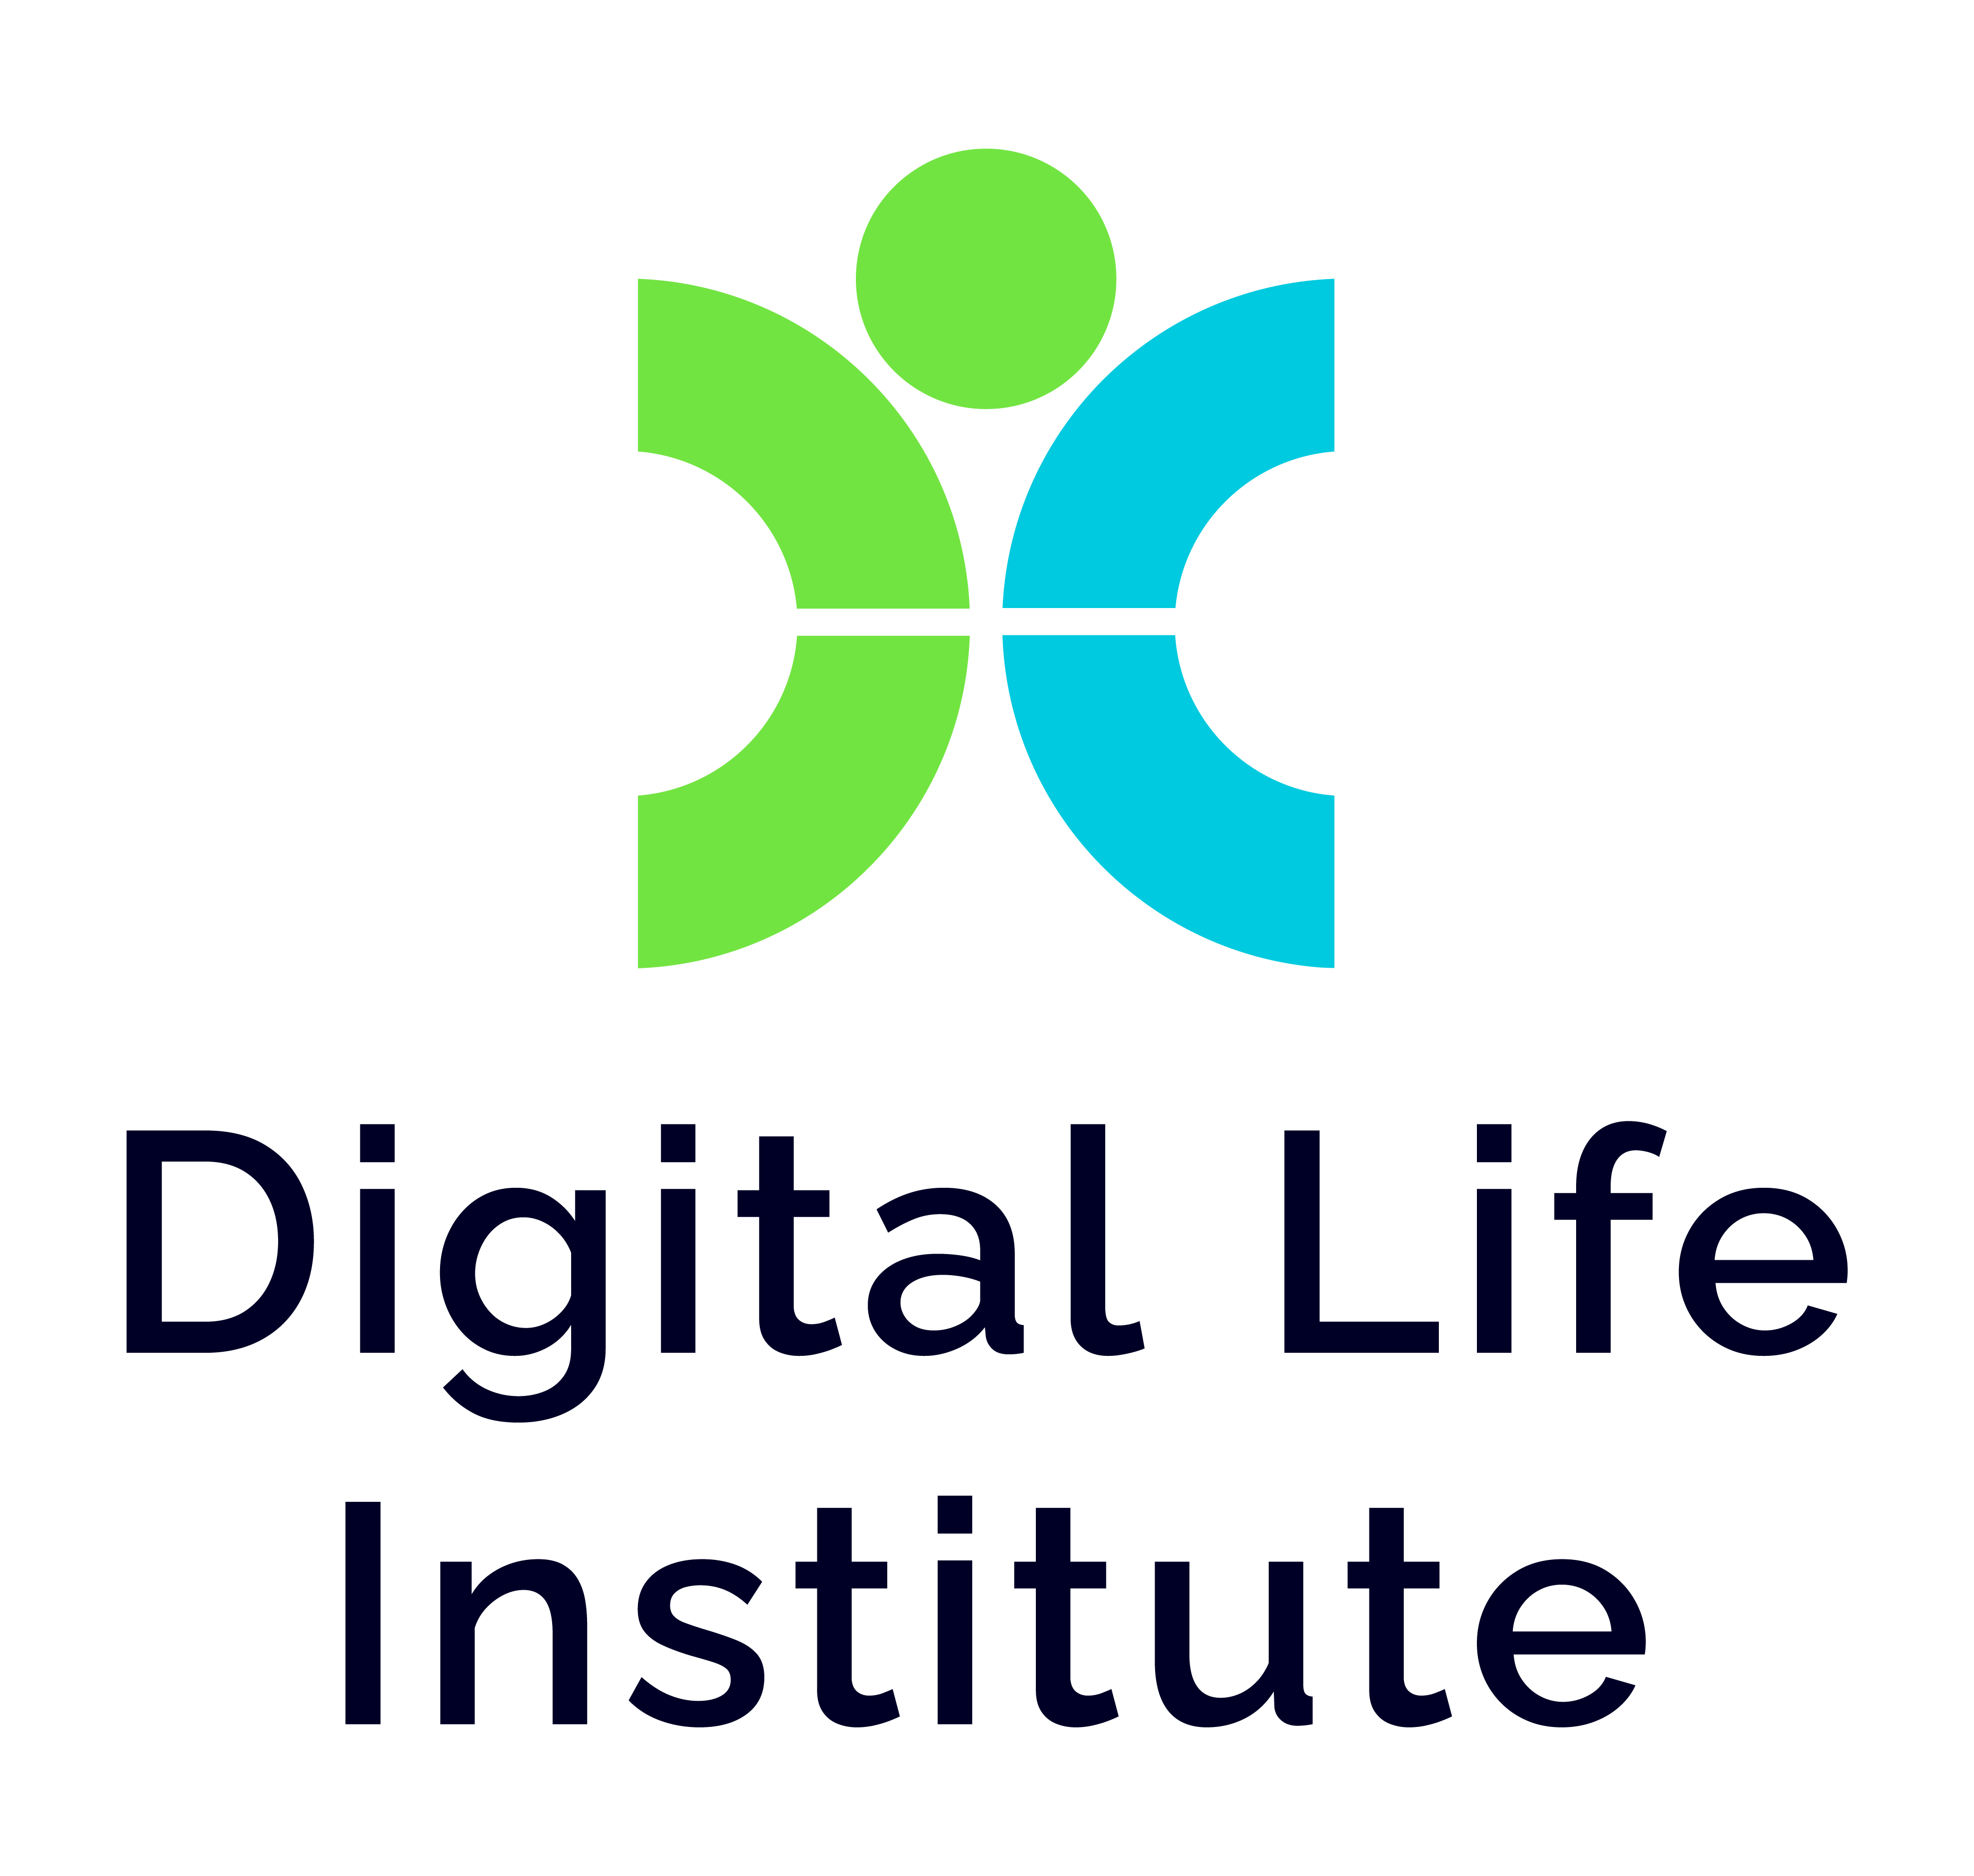 Digital Life Institute logo